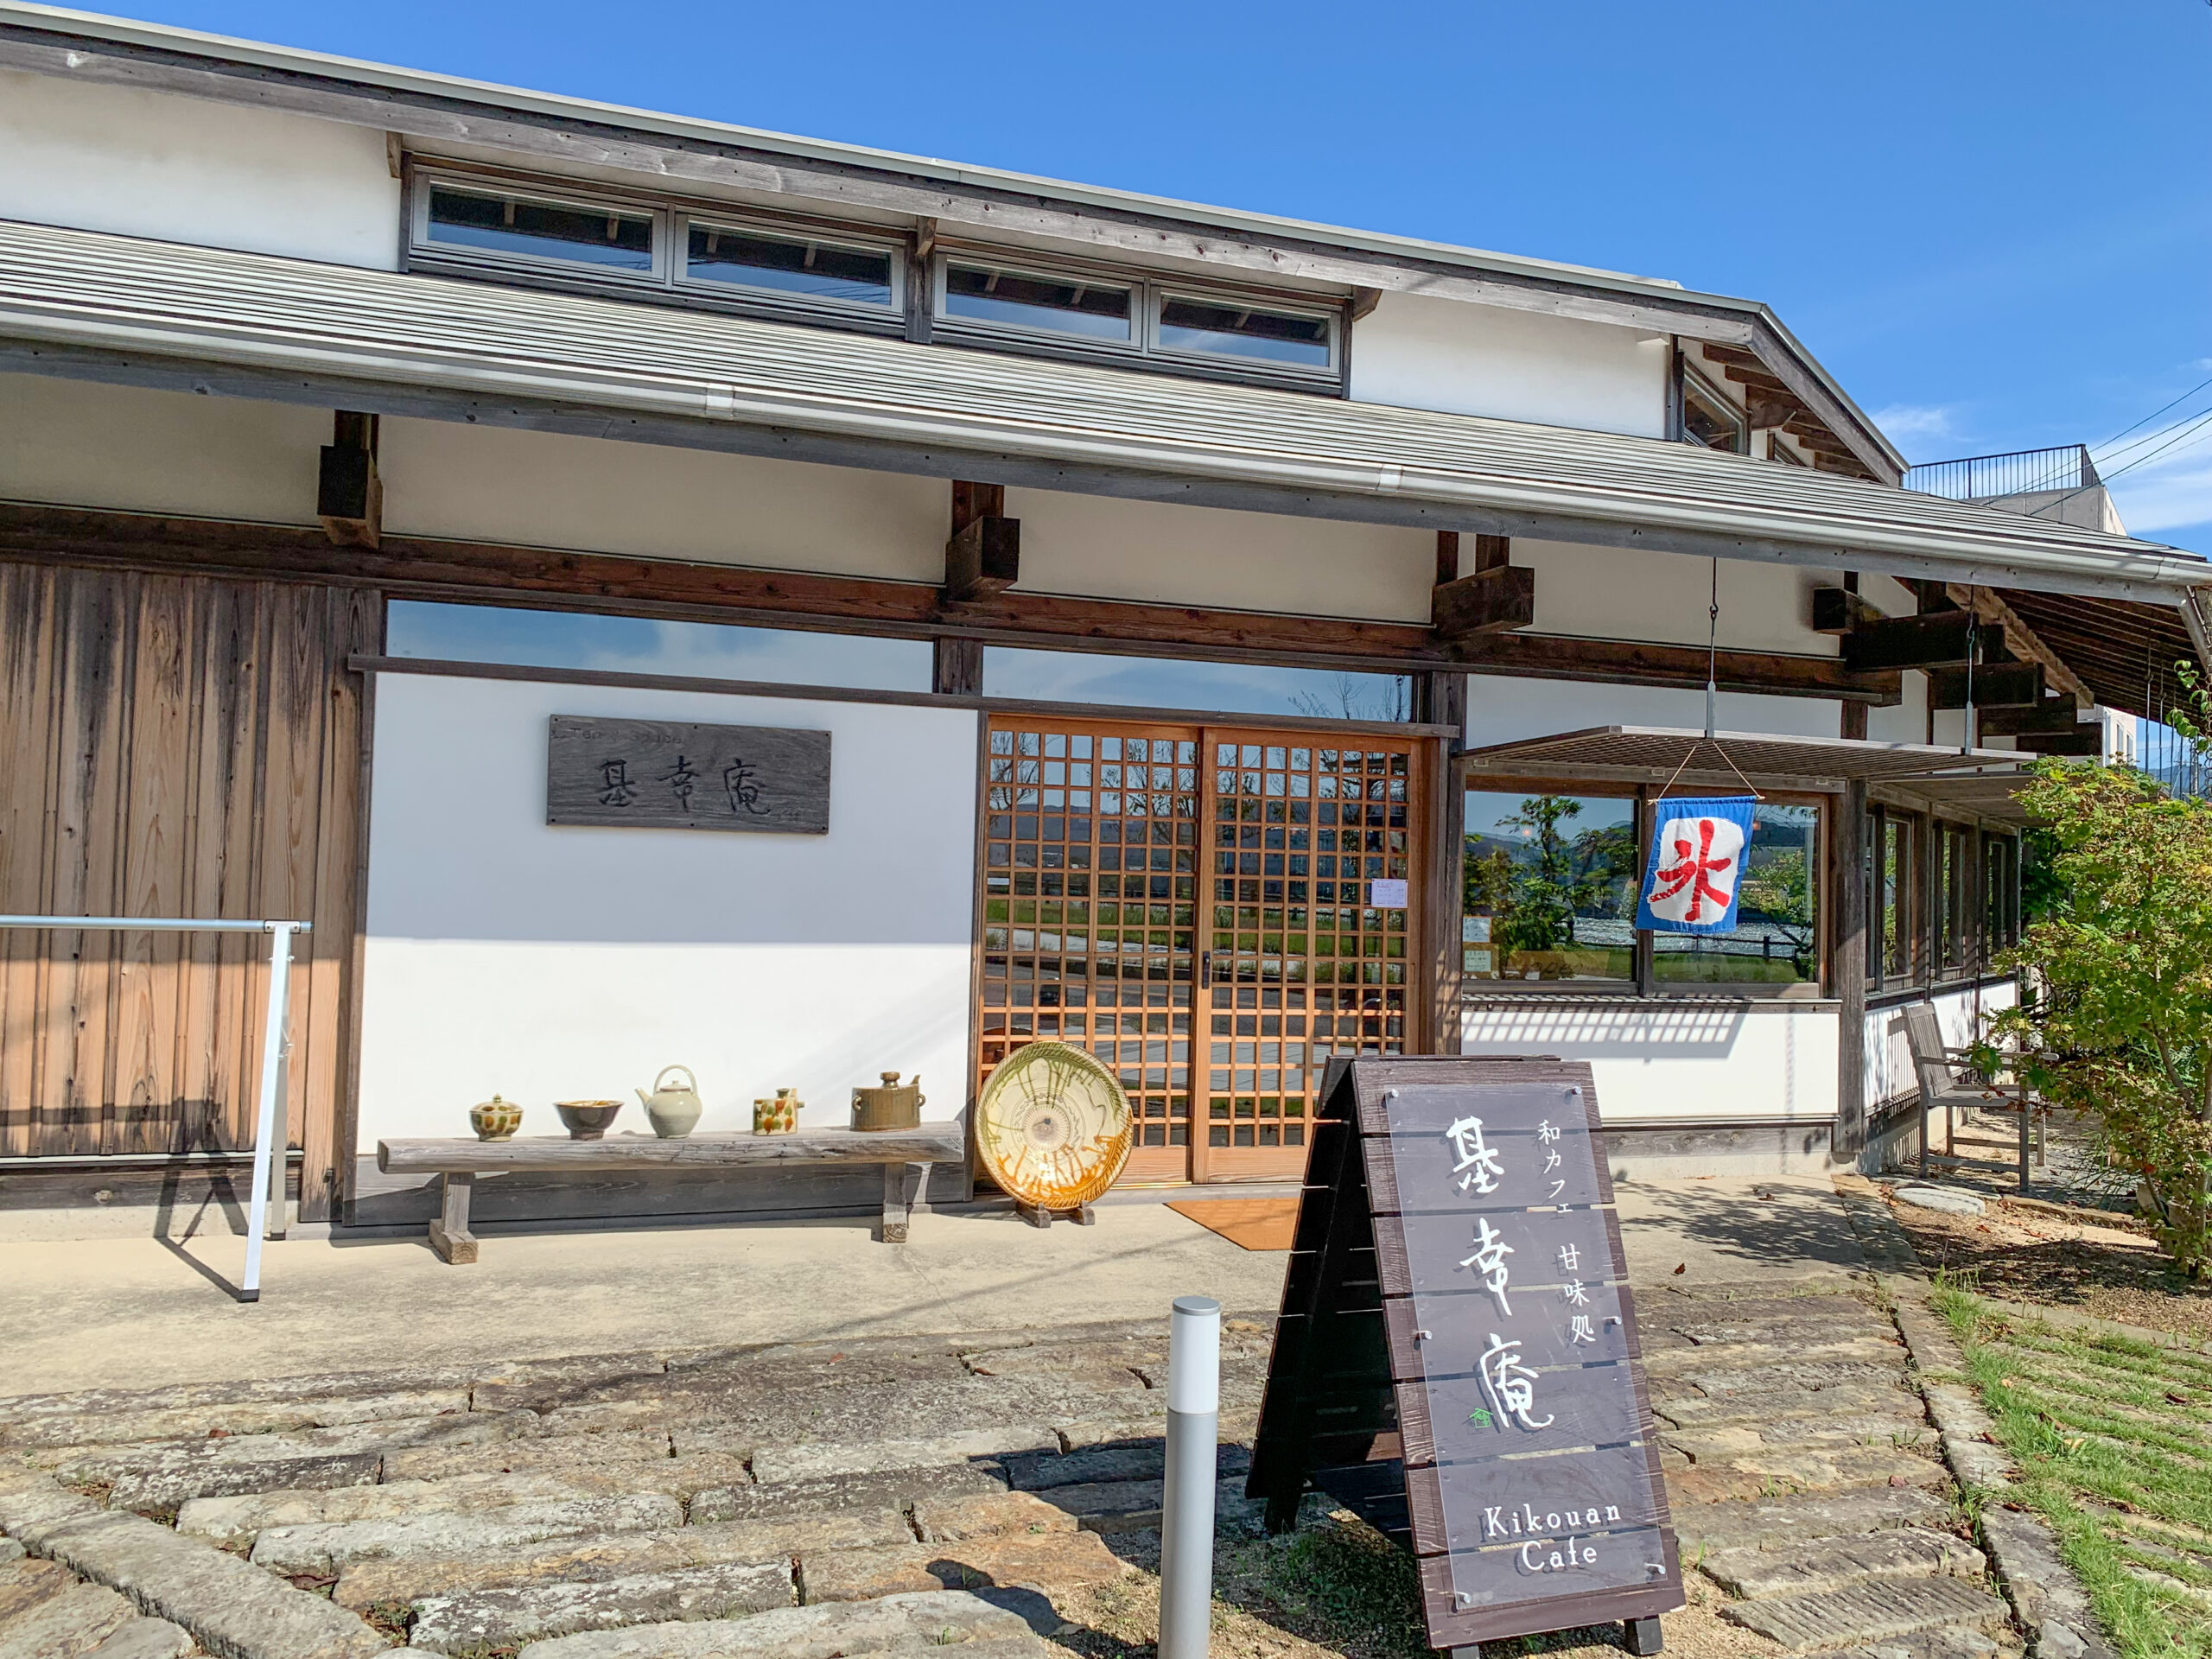 佐賀県唐津市のカフェ、基幸庵の記事のアイキャッチ画像